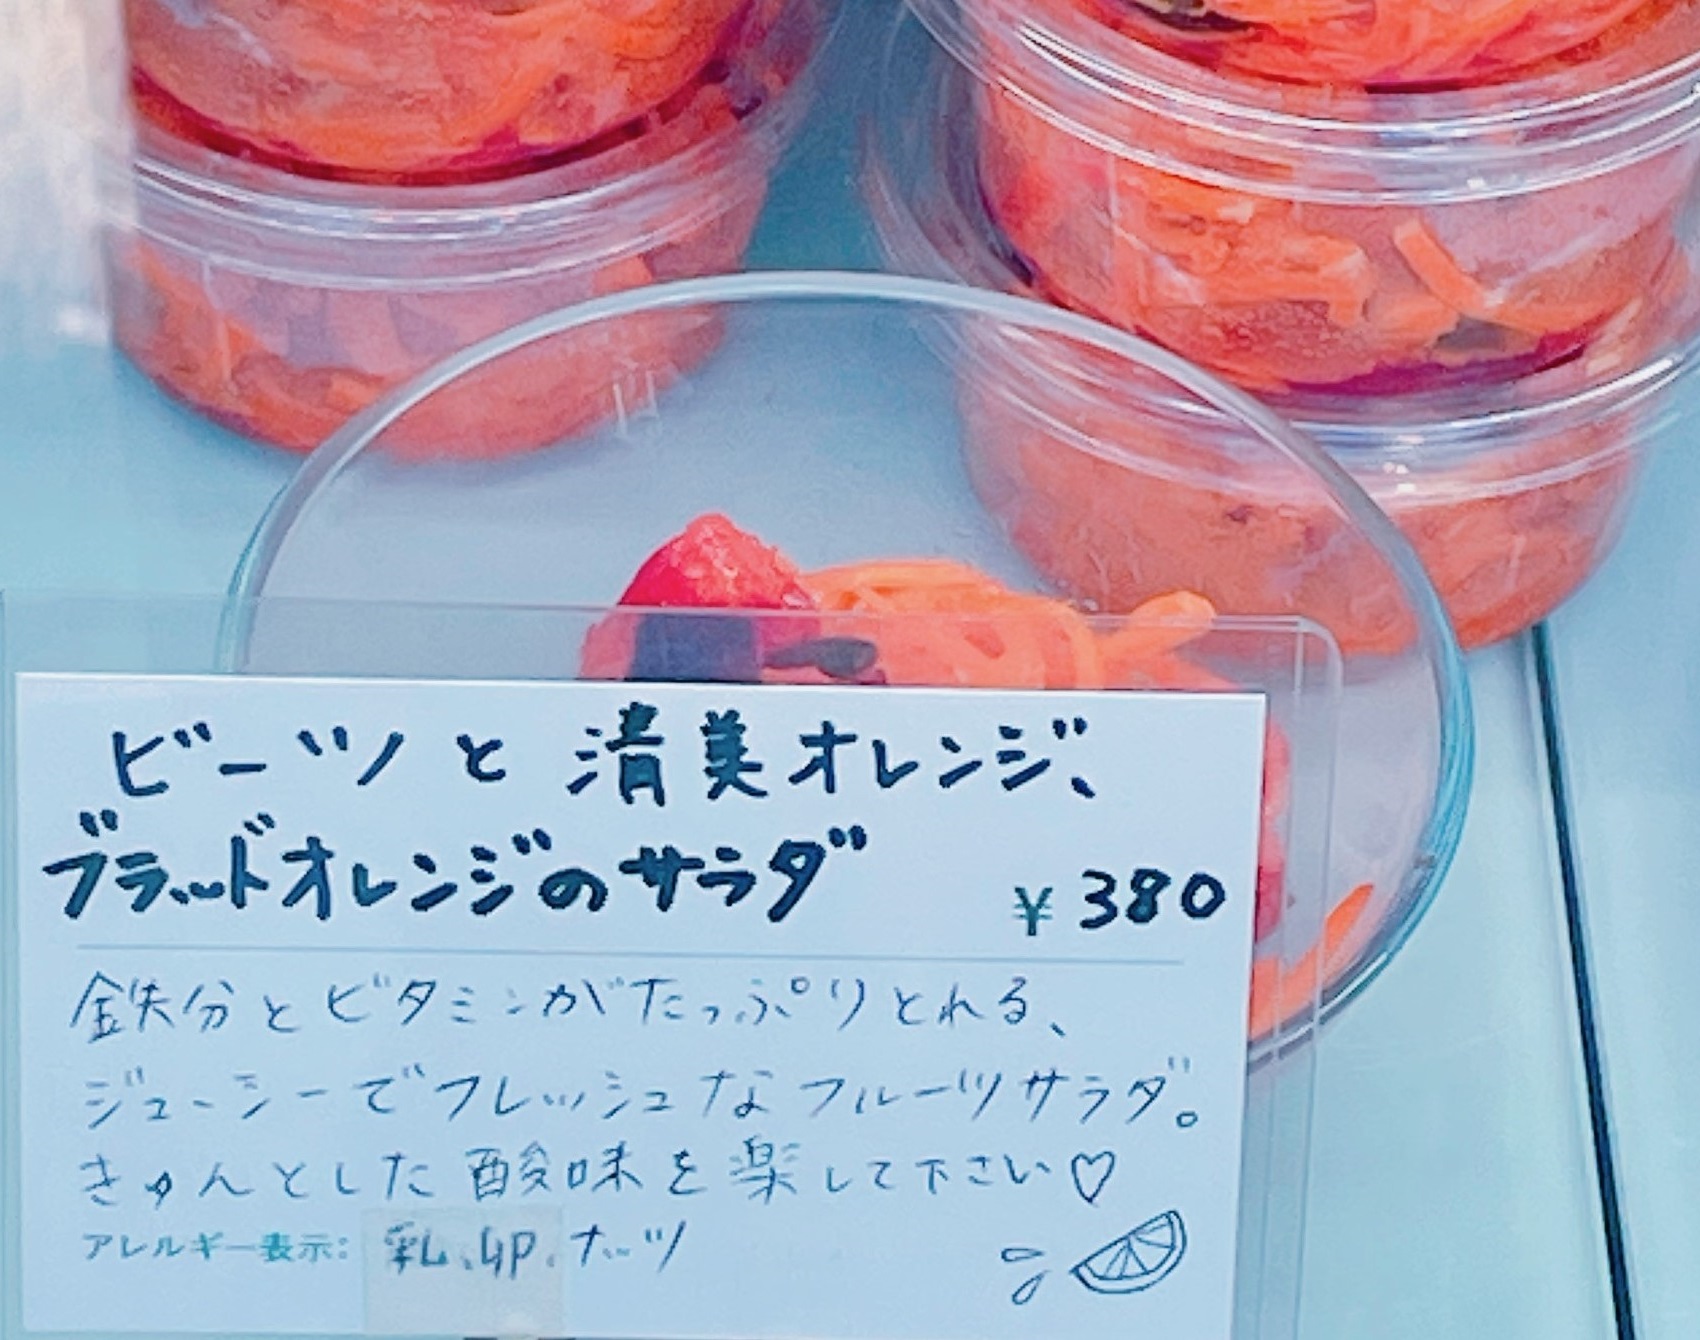 ビーツと清美オレンジ、ブラッドオレンジのサラダ（380円）